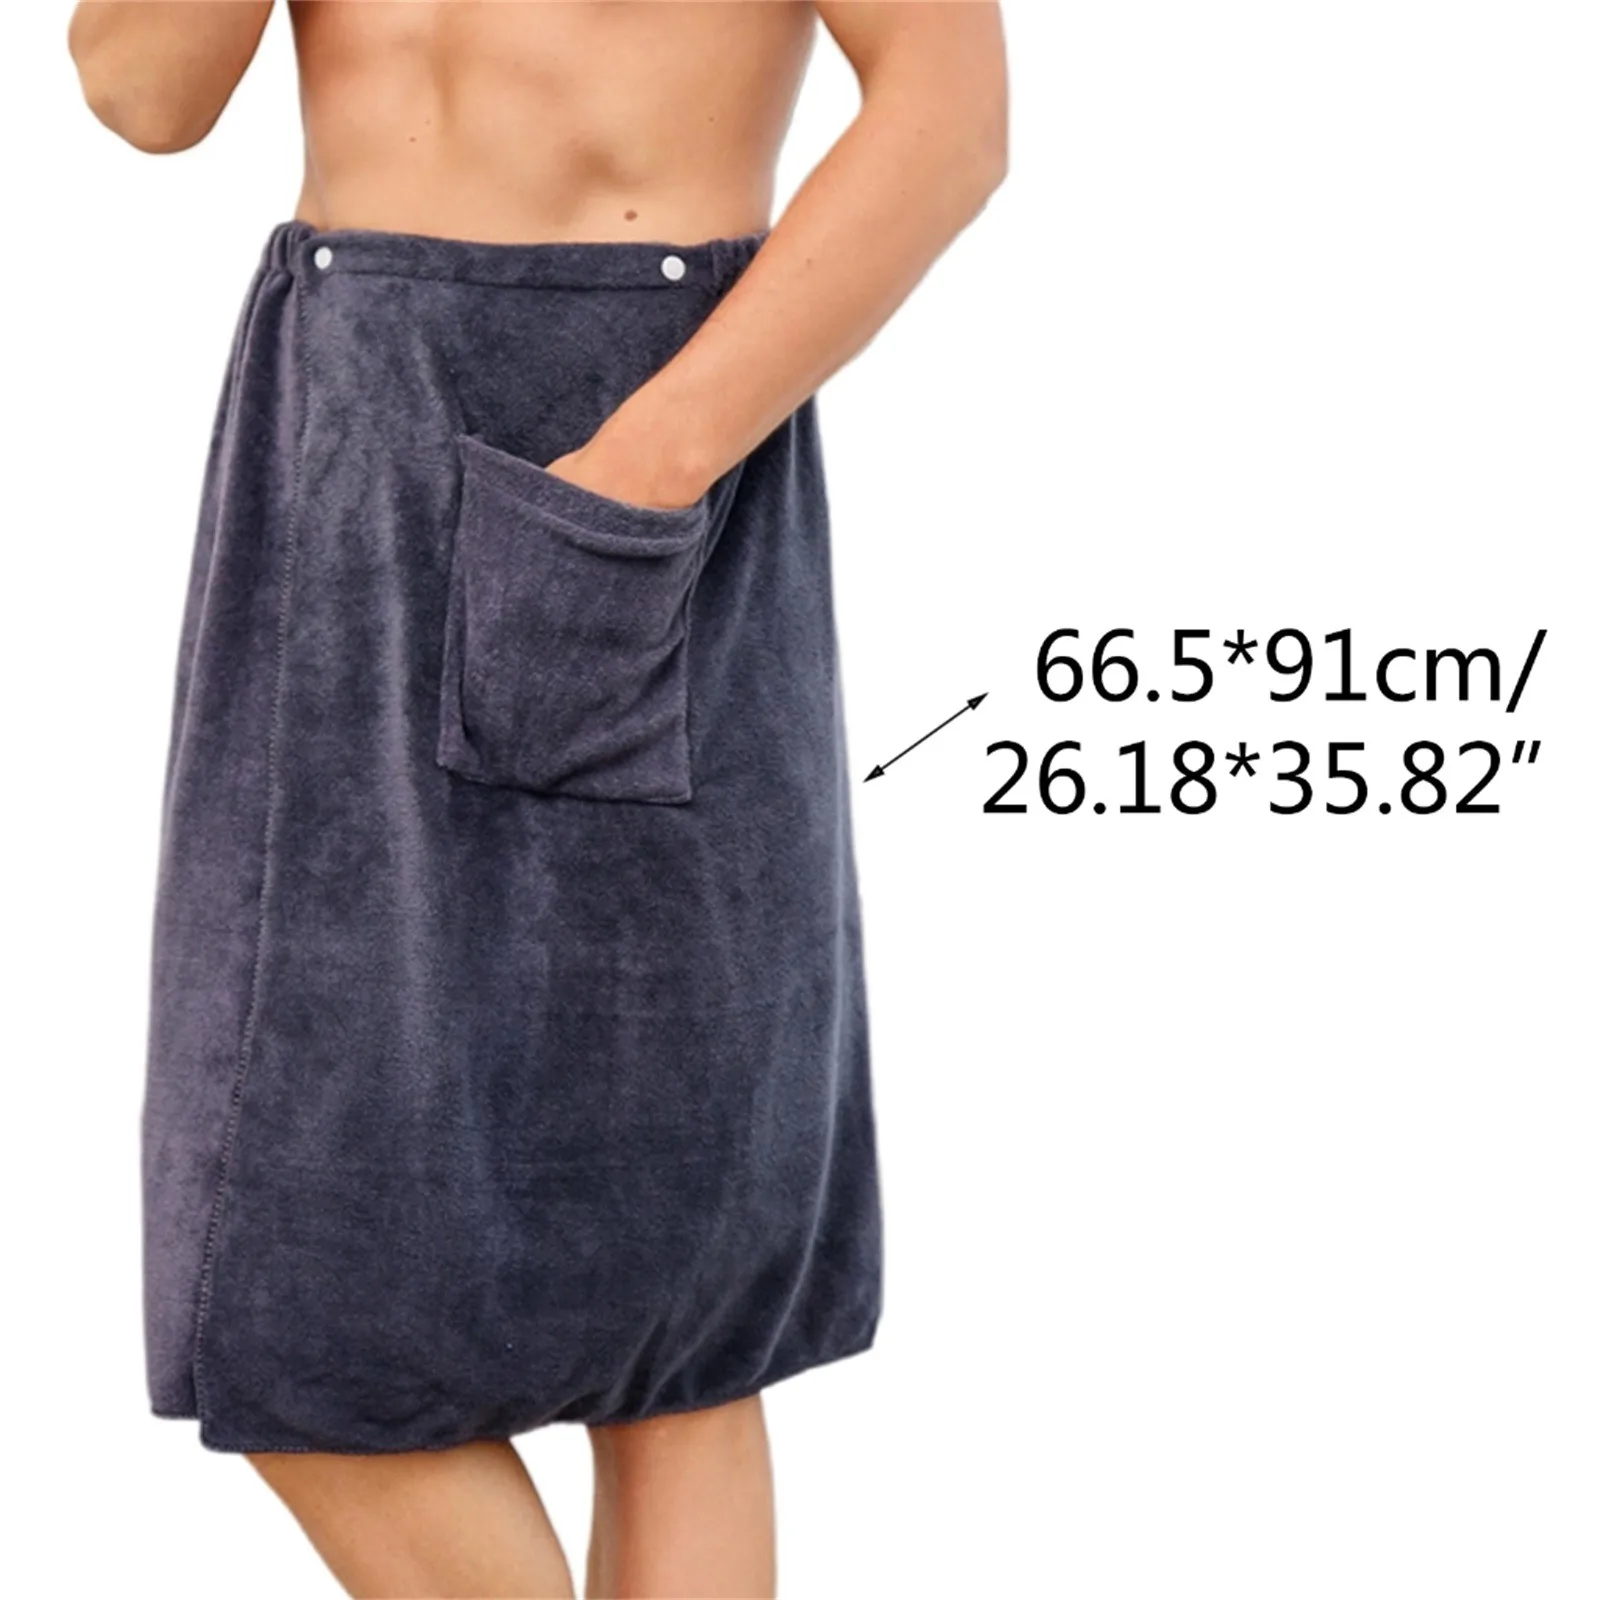 Erkek Giyilebilir banyo havlusu dalgıç giysisi Erkekler için Erkek dalış elbisesi Erkek dalış elbisesi s 5mm dalış elbisesi Erkekler için Soğuk Su Ön Zip 5mm Görüntü 5